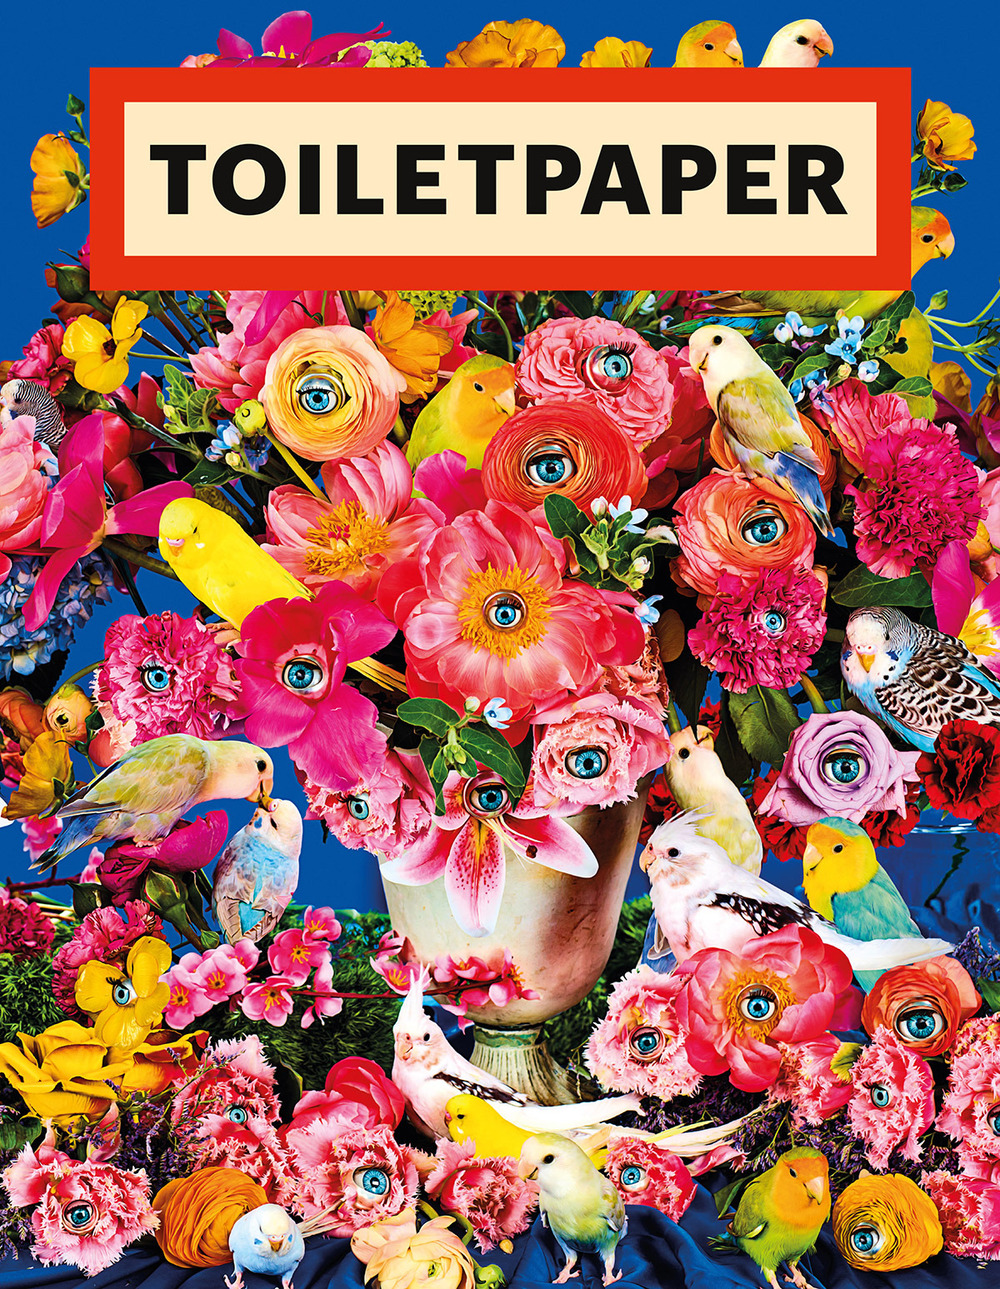 Toiletpaper. Ediz. inglese. Vol. 19